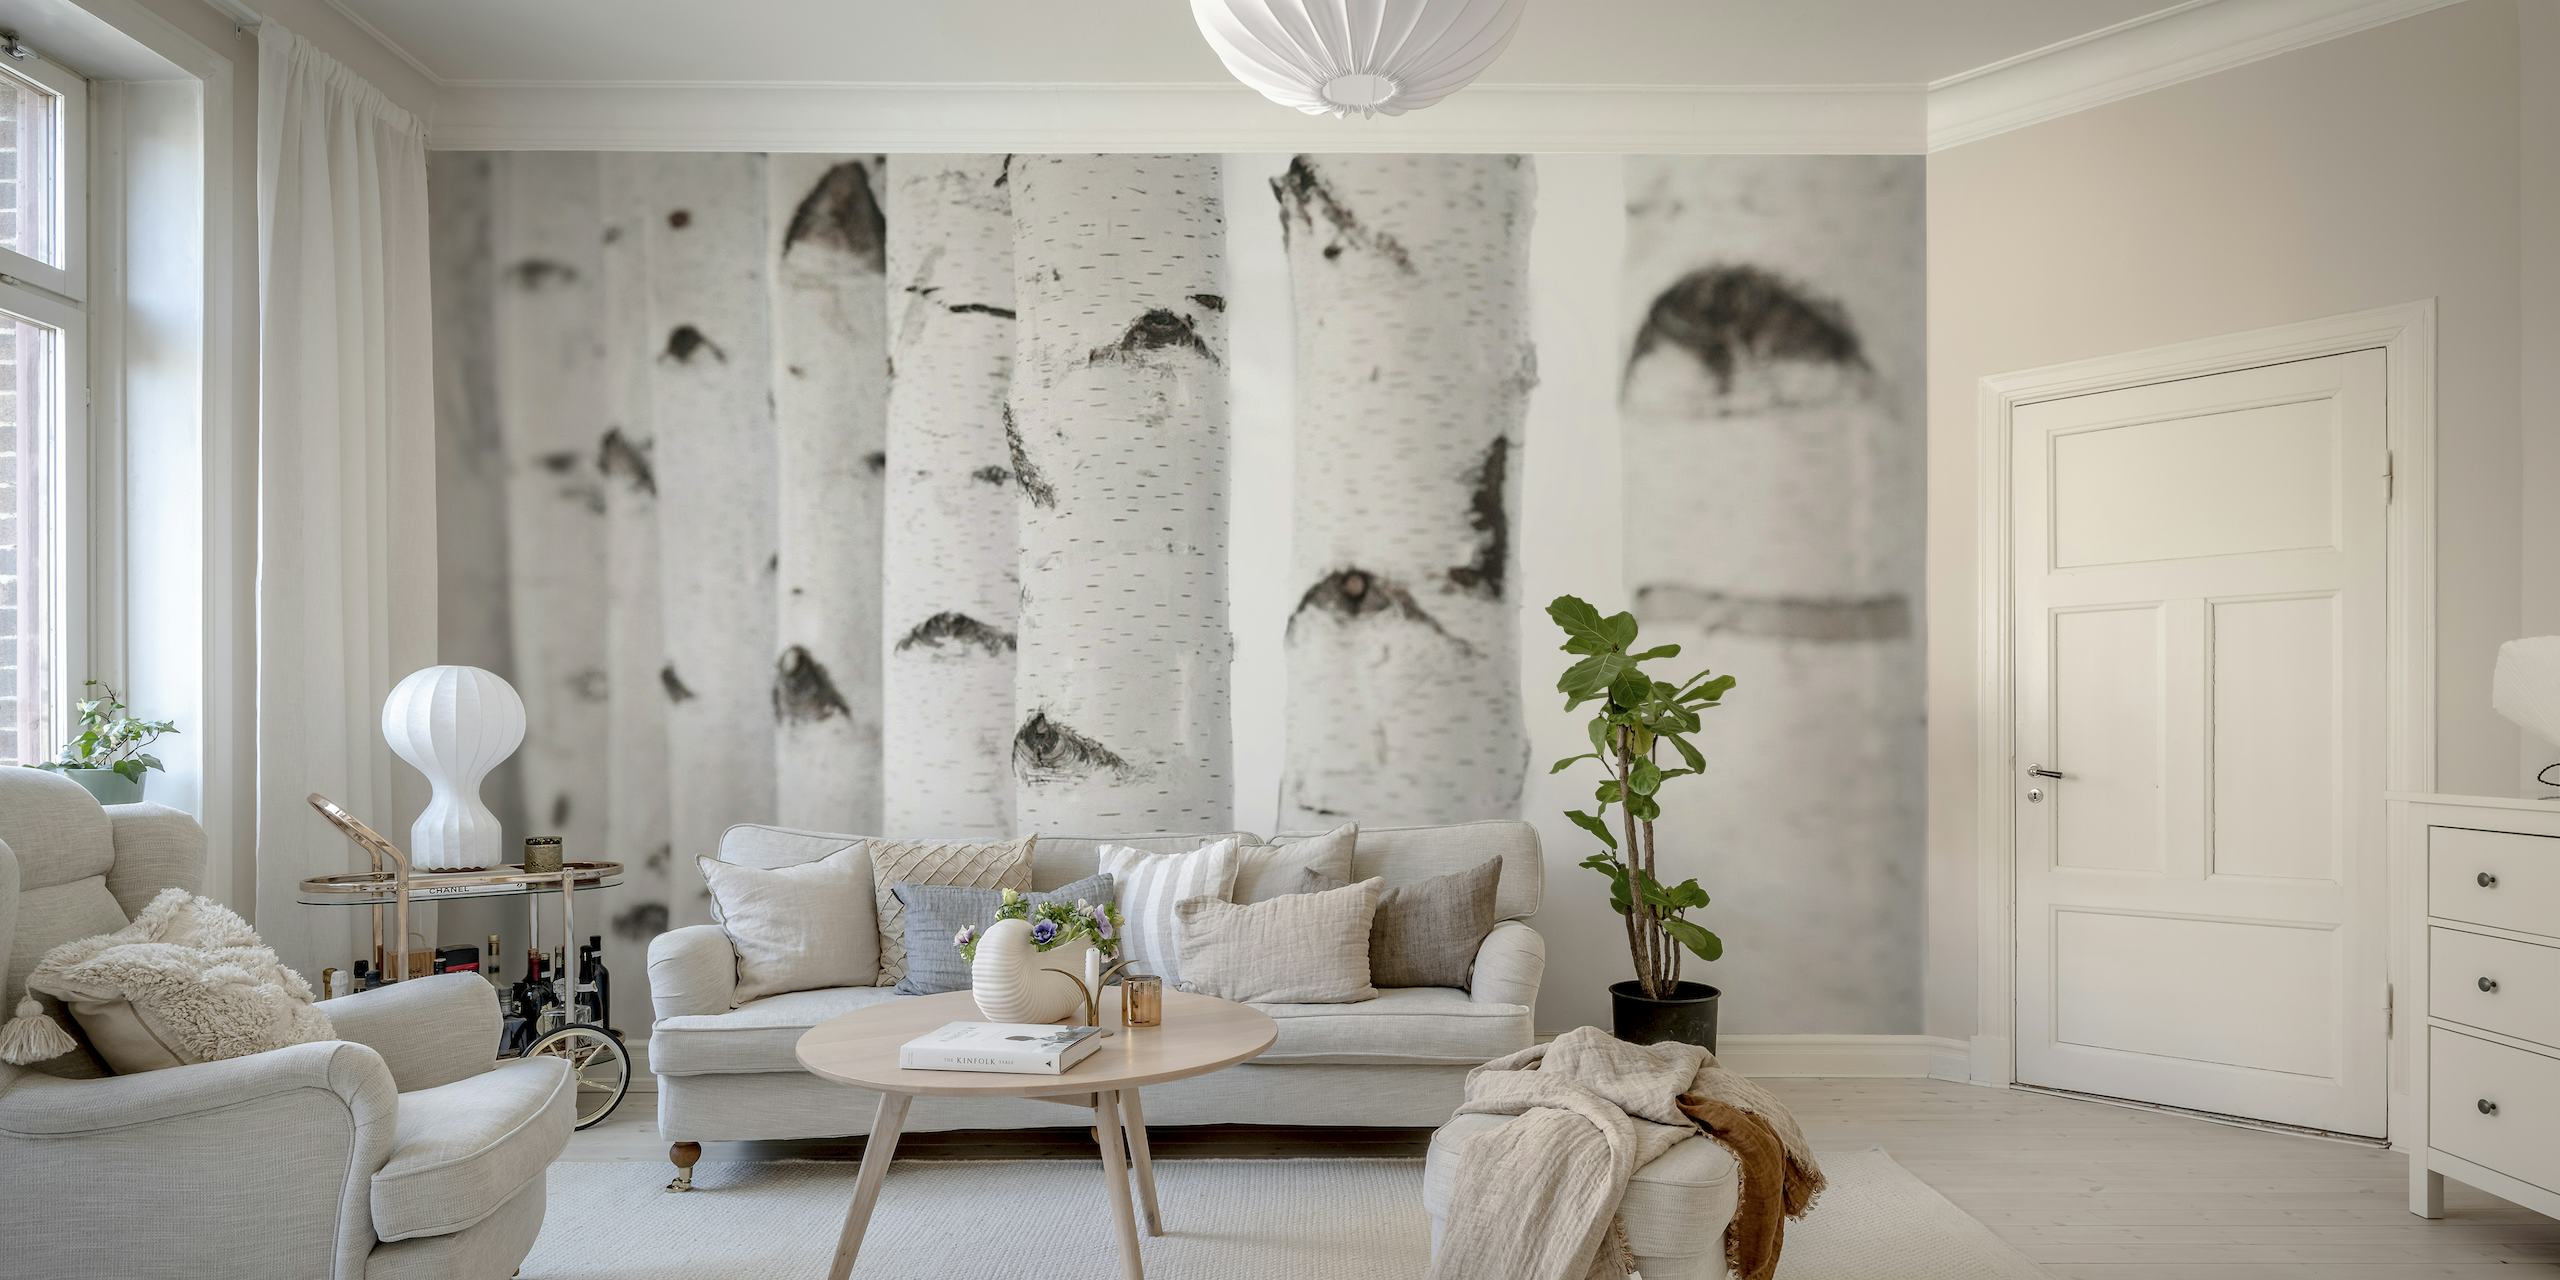 Et vægmaleri med et nærbillede af hvide birkestammer med sorte markeringer, ideel til indretning.